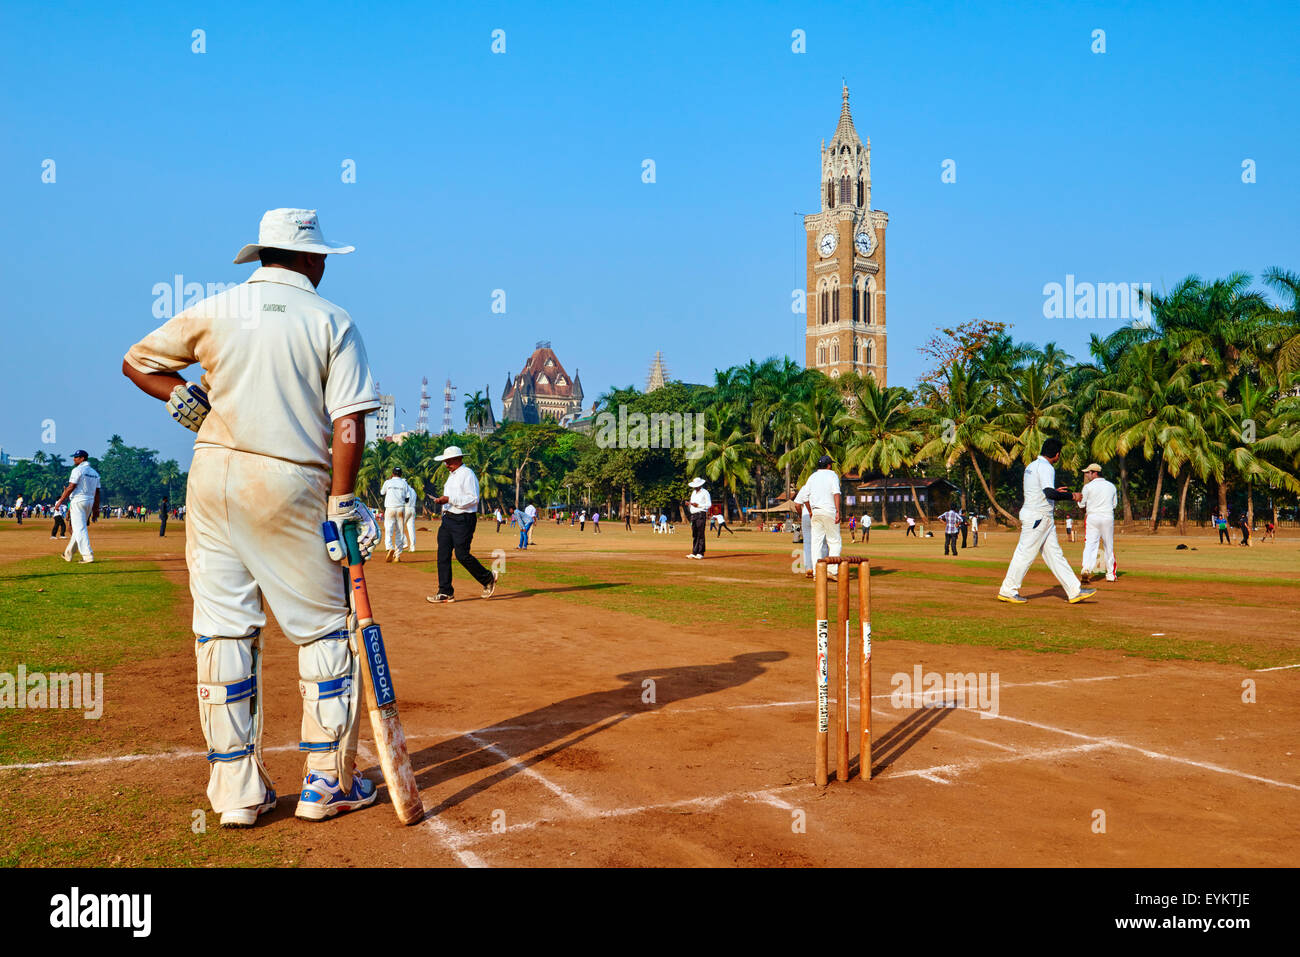 India, Maharashtra, Mumbai (Bombay), cricket party on the Maidan Stock Photo